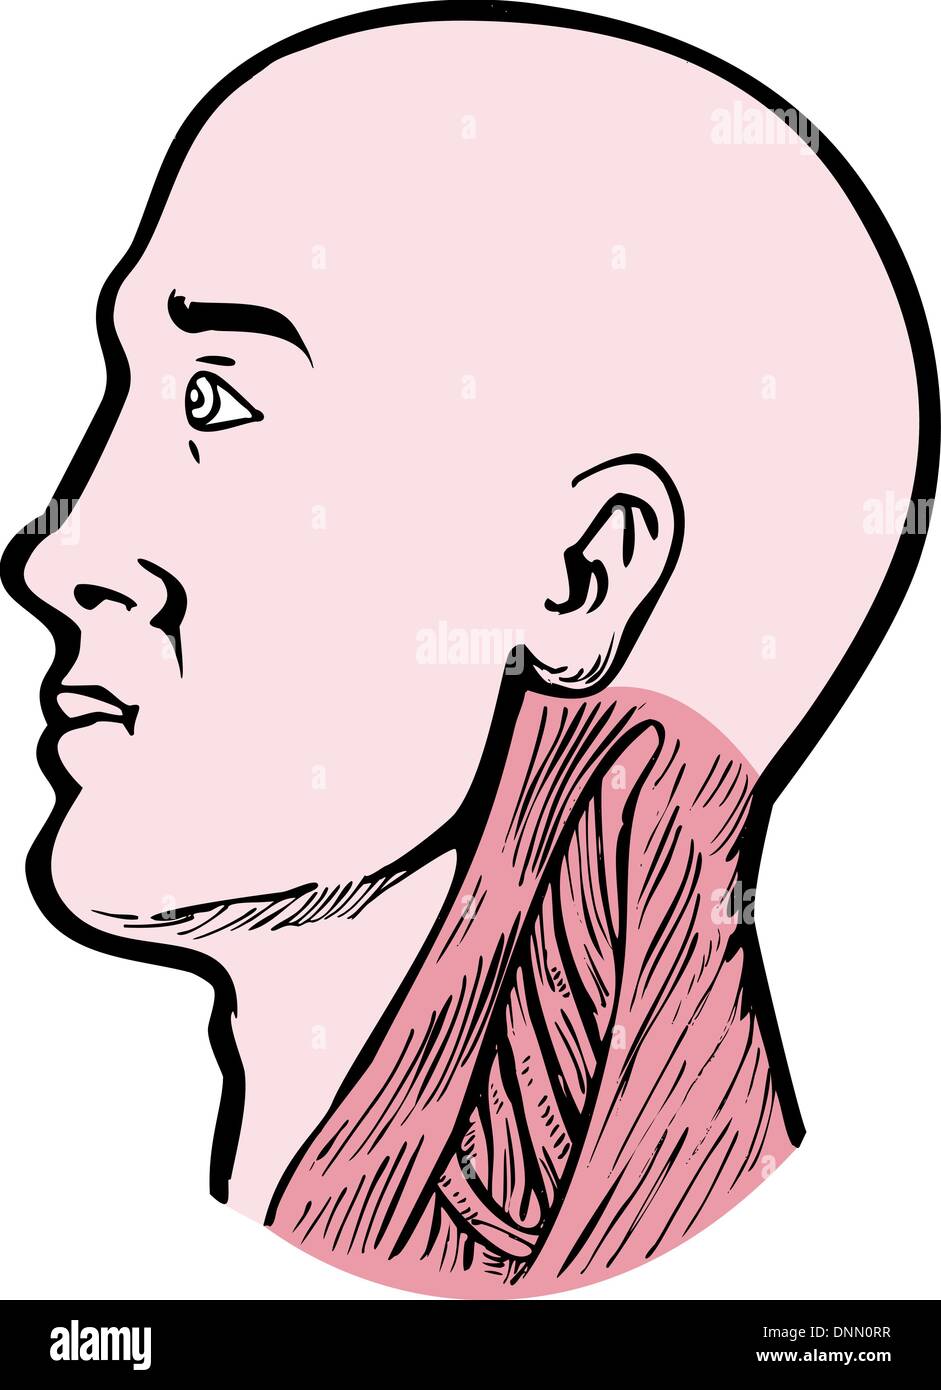 Illustration d'une tête humaine face vers la gauche montrant les muscles du cou, le sterno-cléido-mastoïdien trapèze supérieur et backgroundhuman Scalenes isolated on white Illustration de Vecteur